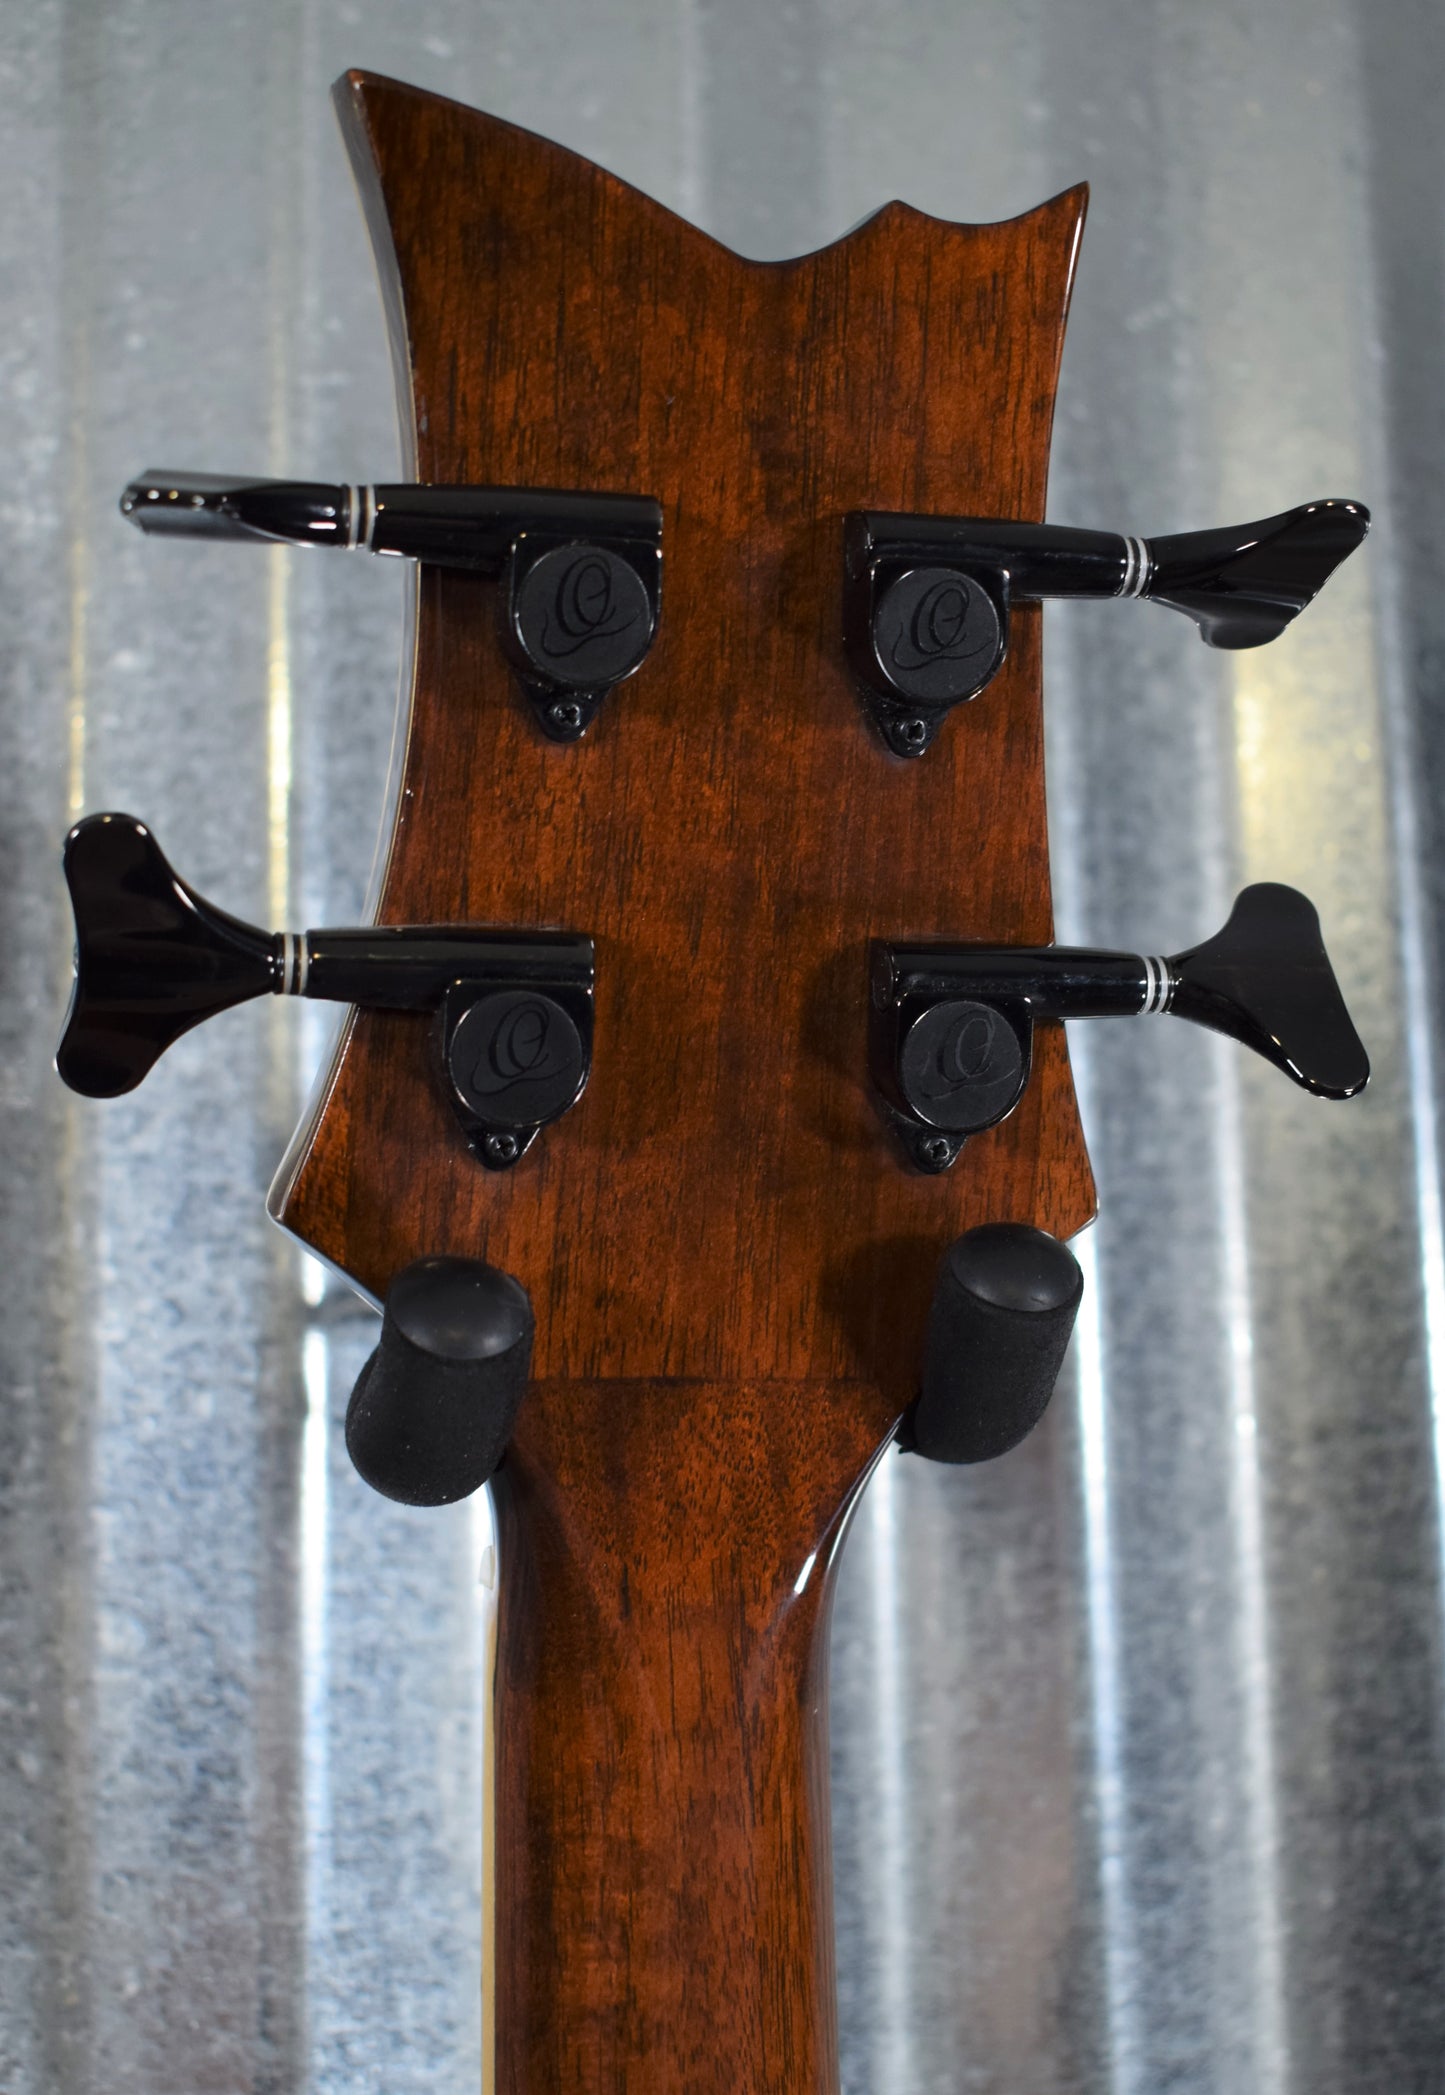 Ortega Guitars Ken Taylor KTSM-4 Four String Acoustic Electric Bass & Bag #3701